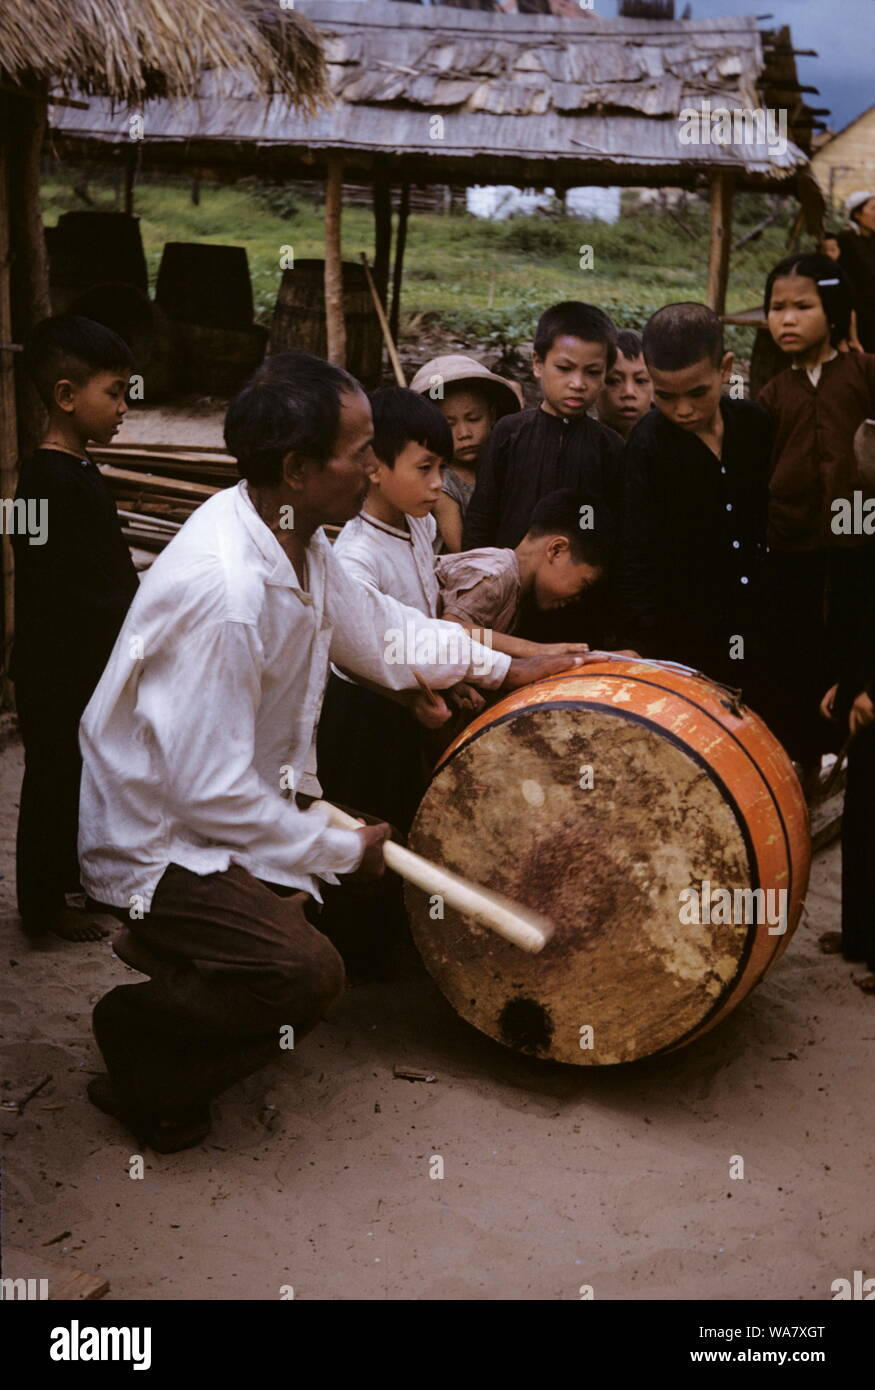 AJAXNETPHOTO. 1955 (environ). INDO CHINE. Le VIETNAM. (Dans le pays EMPLACEMENT INCONNU.) - battre le tambour - jeune paysan enfants regardent UN HOMME FRAPPE UN TAMBOUR. photo:JEAN CORRE/AJAXREF:JC1955 Banque D'Images